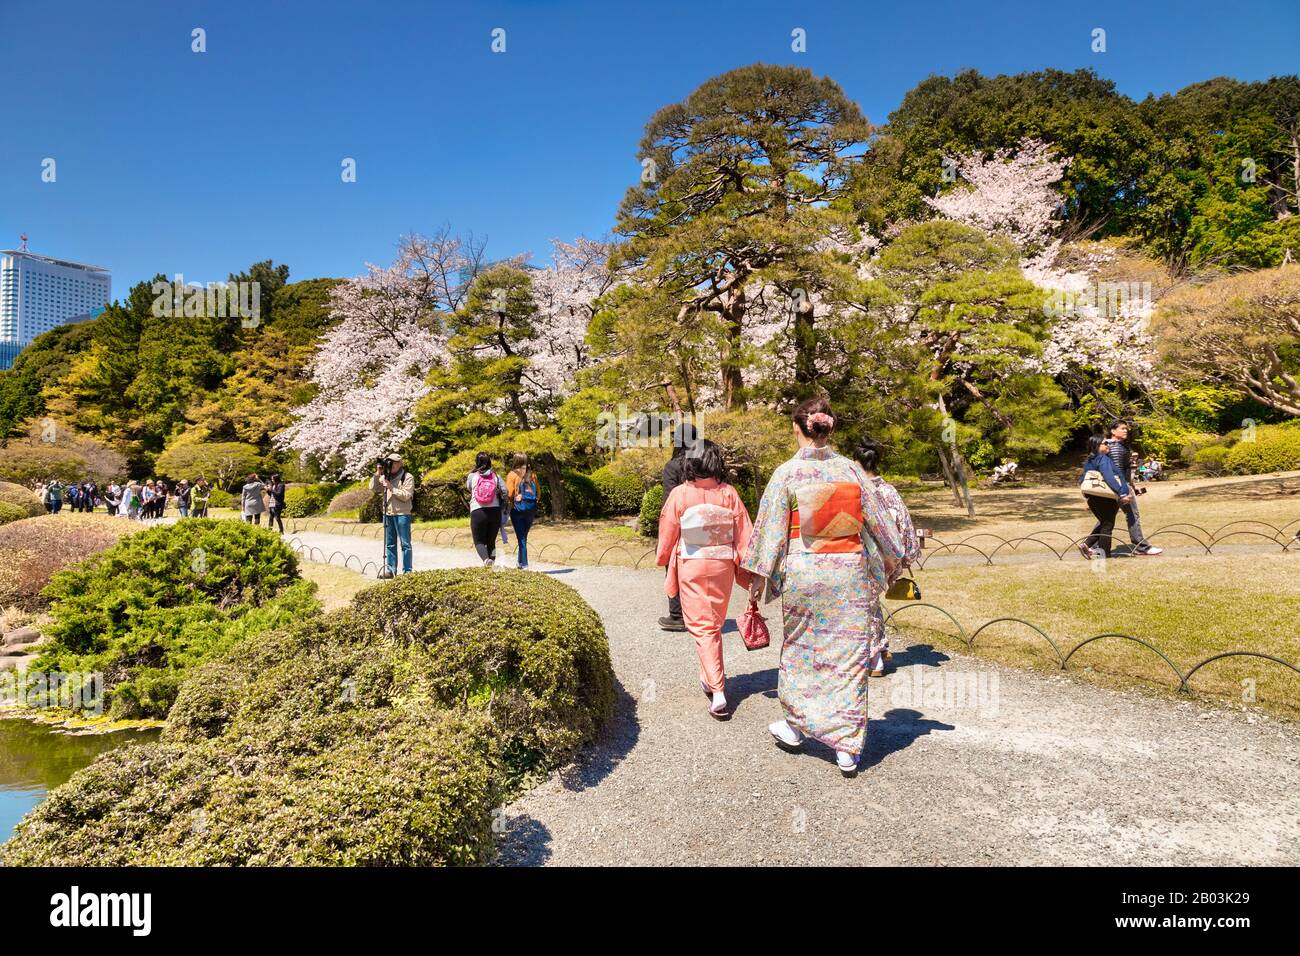 4 aprile 2019: Tokyo, Giappone - Kimono indossa turisti nel Parco di Shinjuku Gyoen, uno dei parchi più famosi del Giappone, nella stagione di Cherry Blossom. Foto Stock